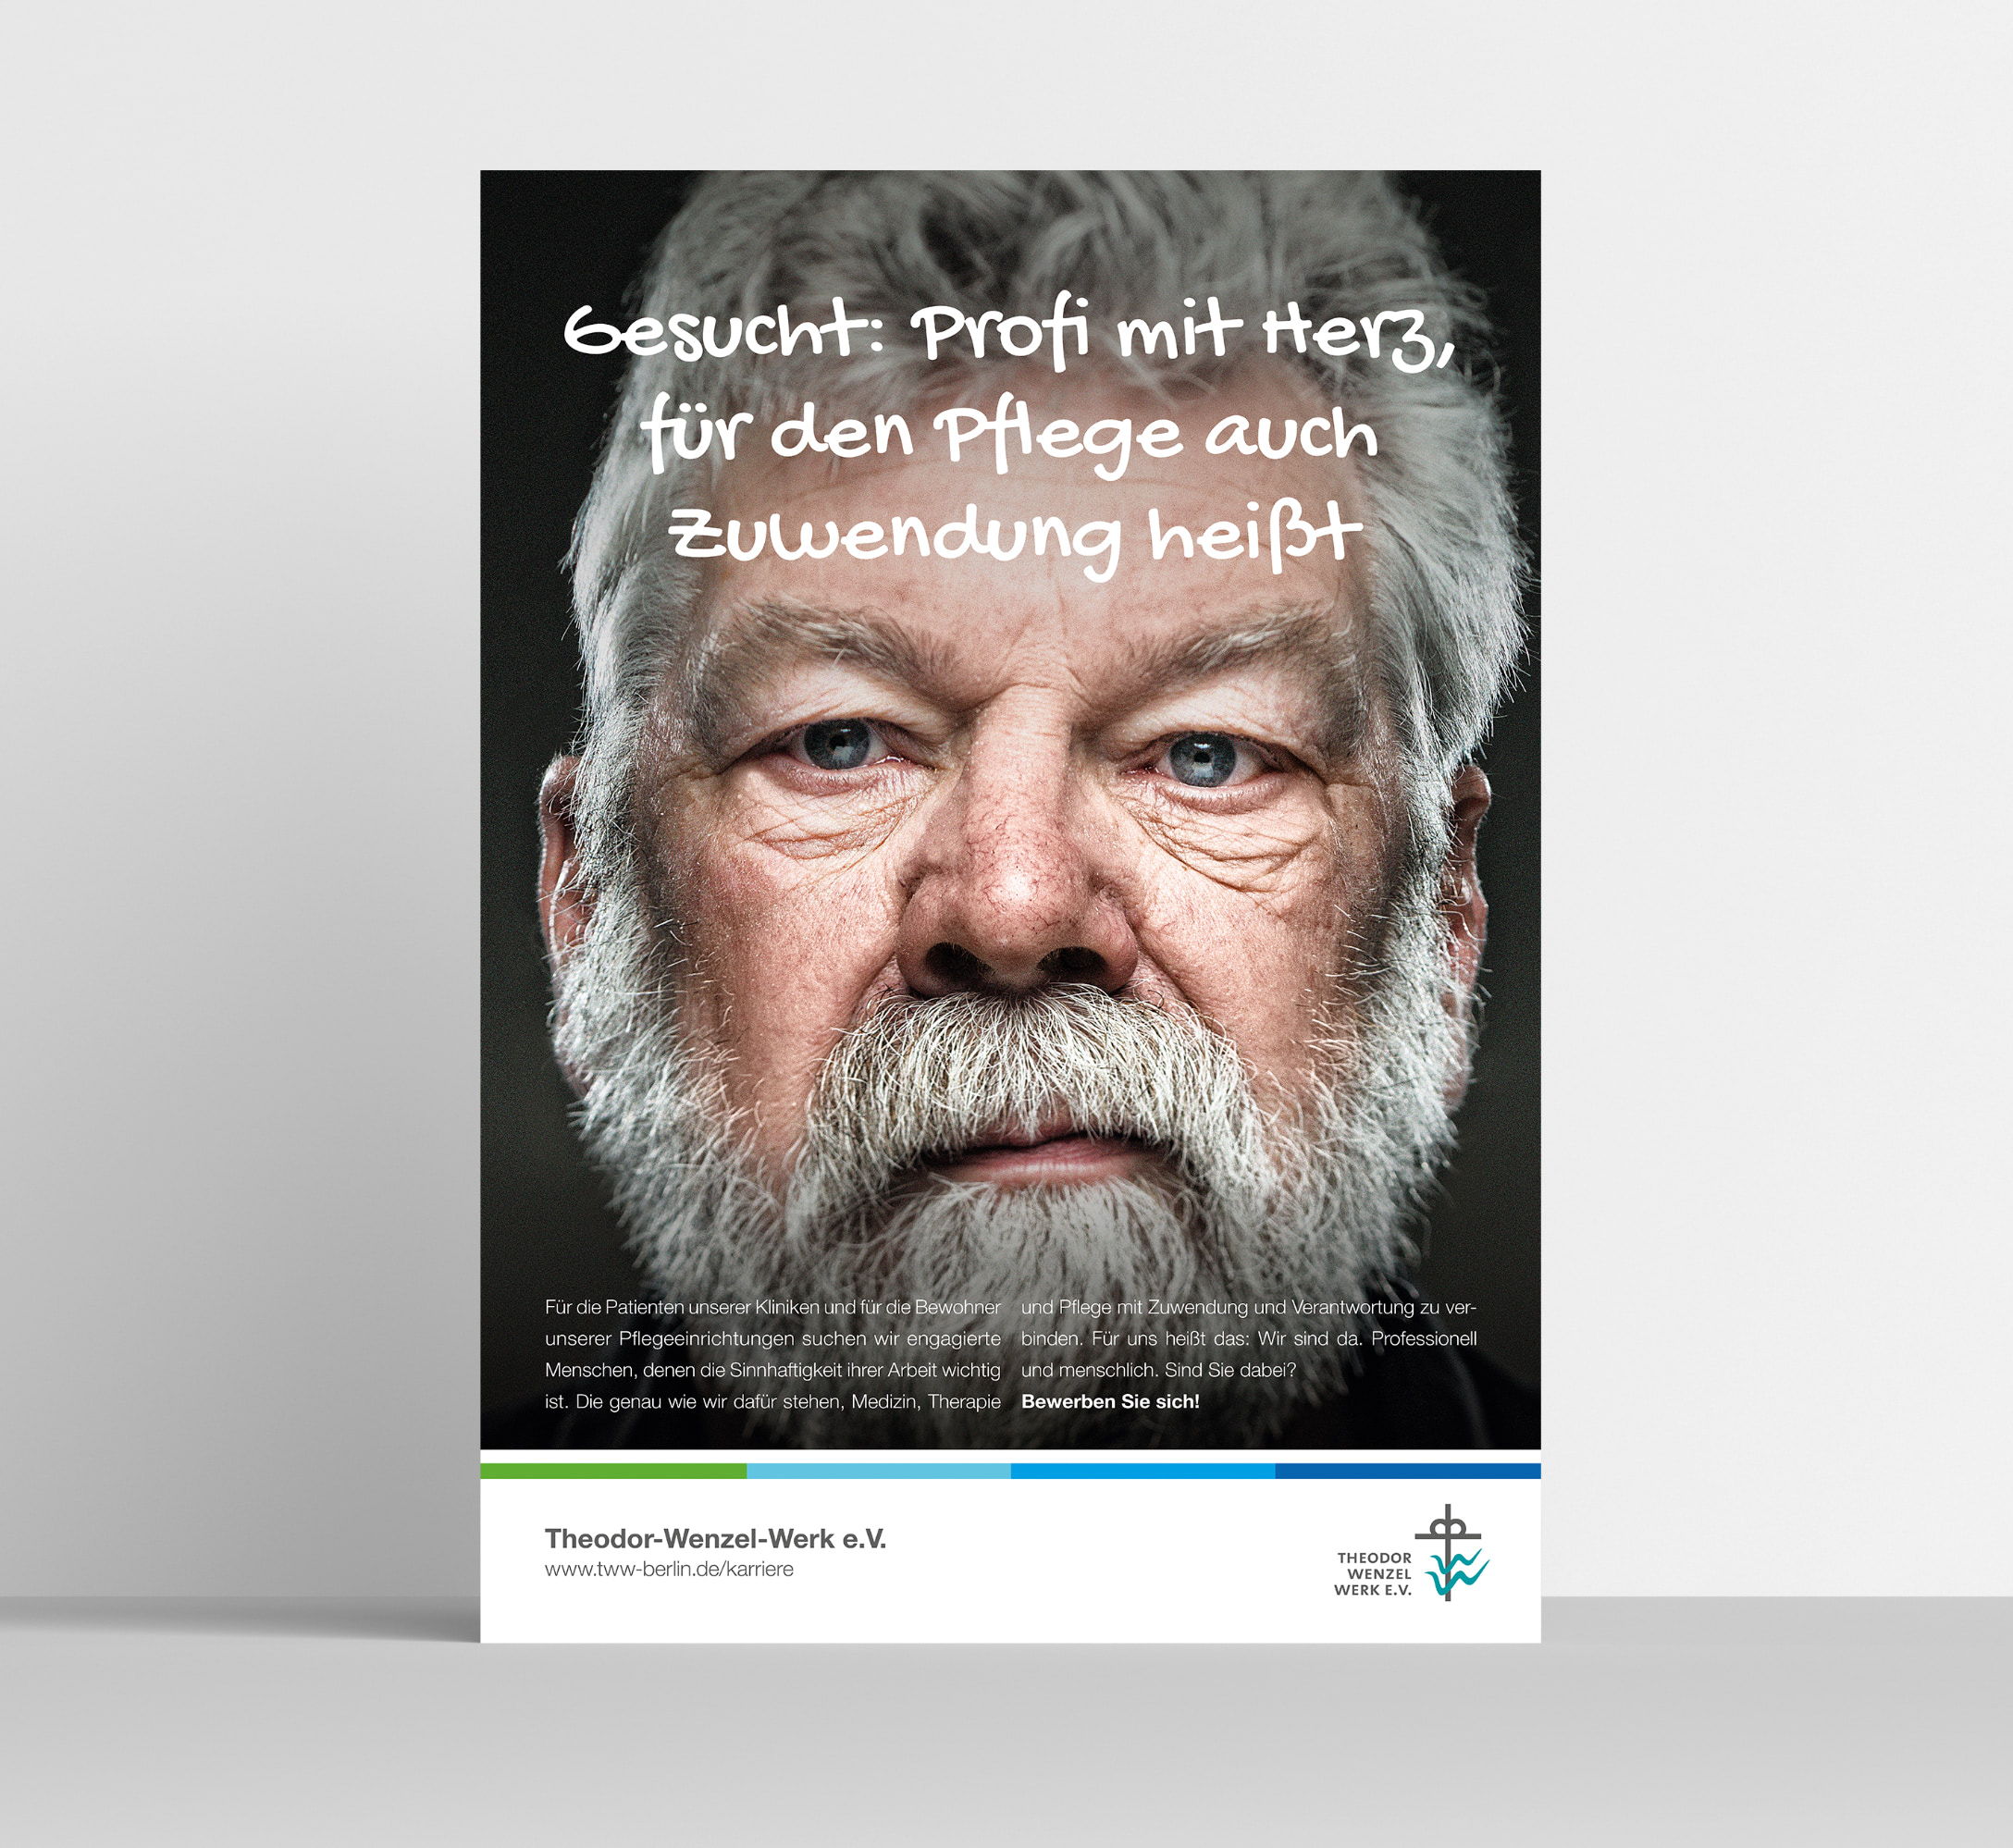 Auf einem Kampagnenmotiv für Personalmarketing der Healthcare Werbeangentur mcs schaut ein älterer Mann geradewegs in die Kamera